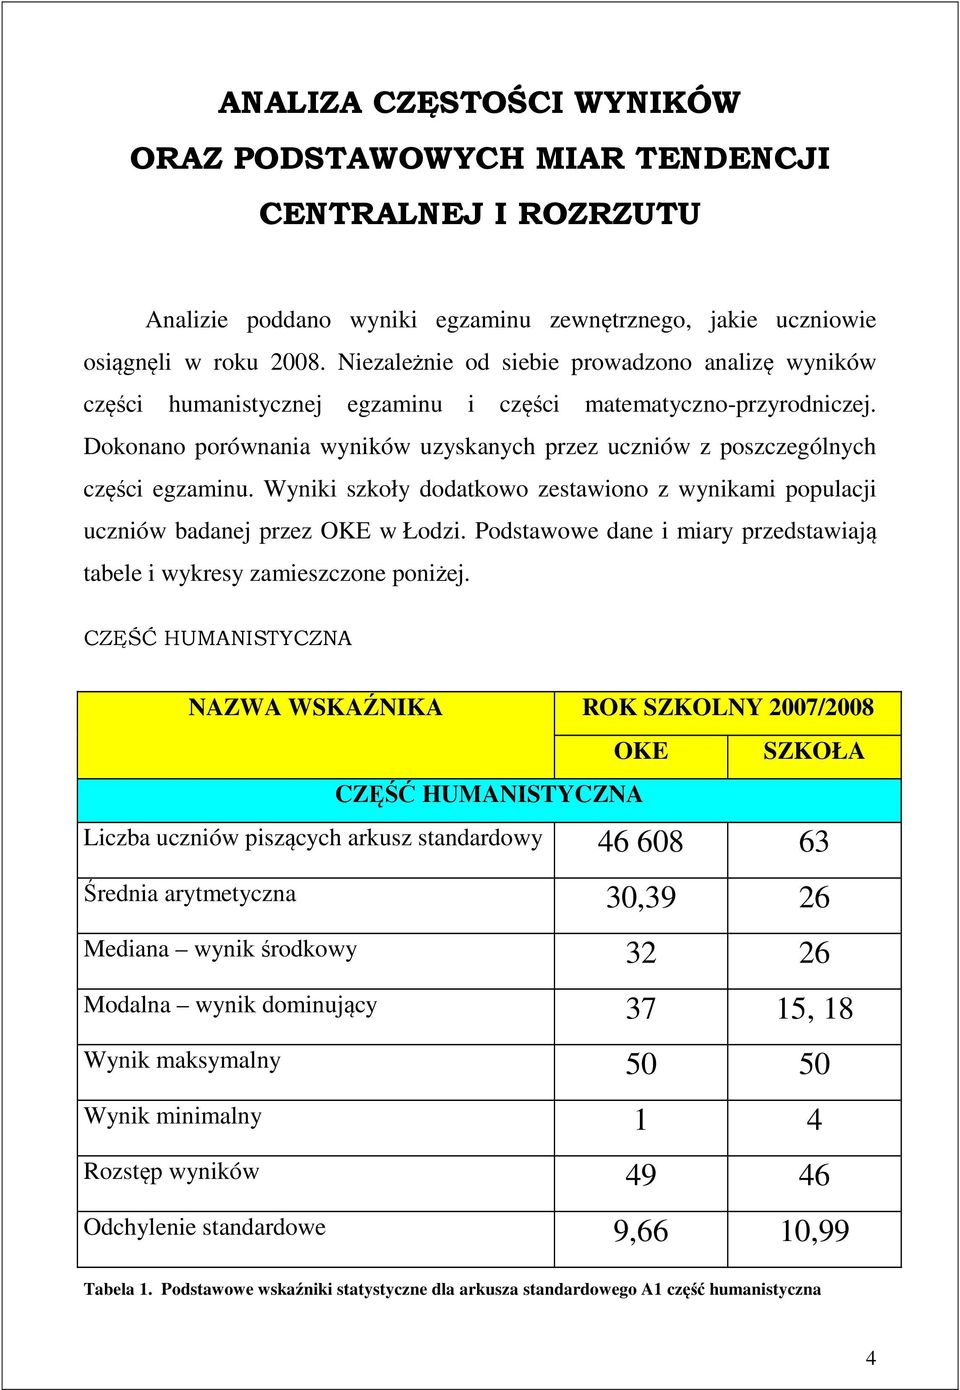 Dokonano porównania wyników uzyskanych przez uczniów z poszczególnych części egzaminu. Wyniki szkoły dodatkowo zestawiono z wynikami populacji uczniów badanej przez OKE w Łodzi.